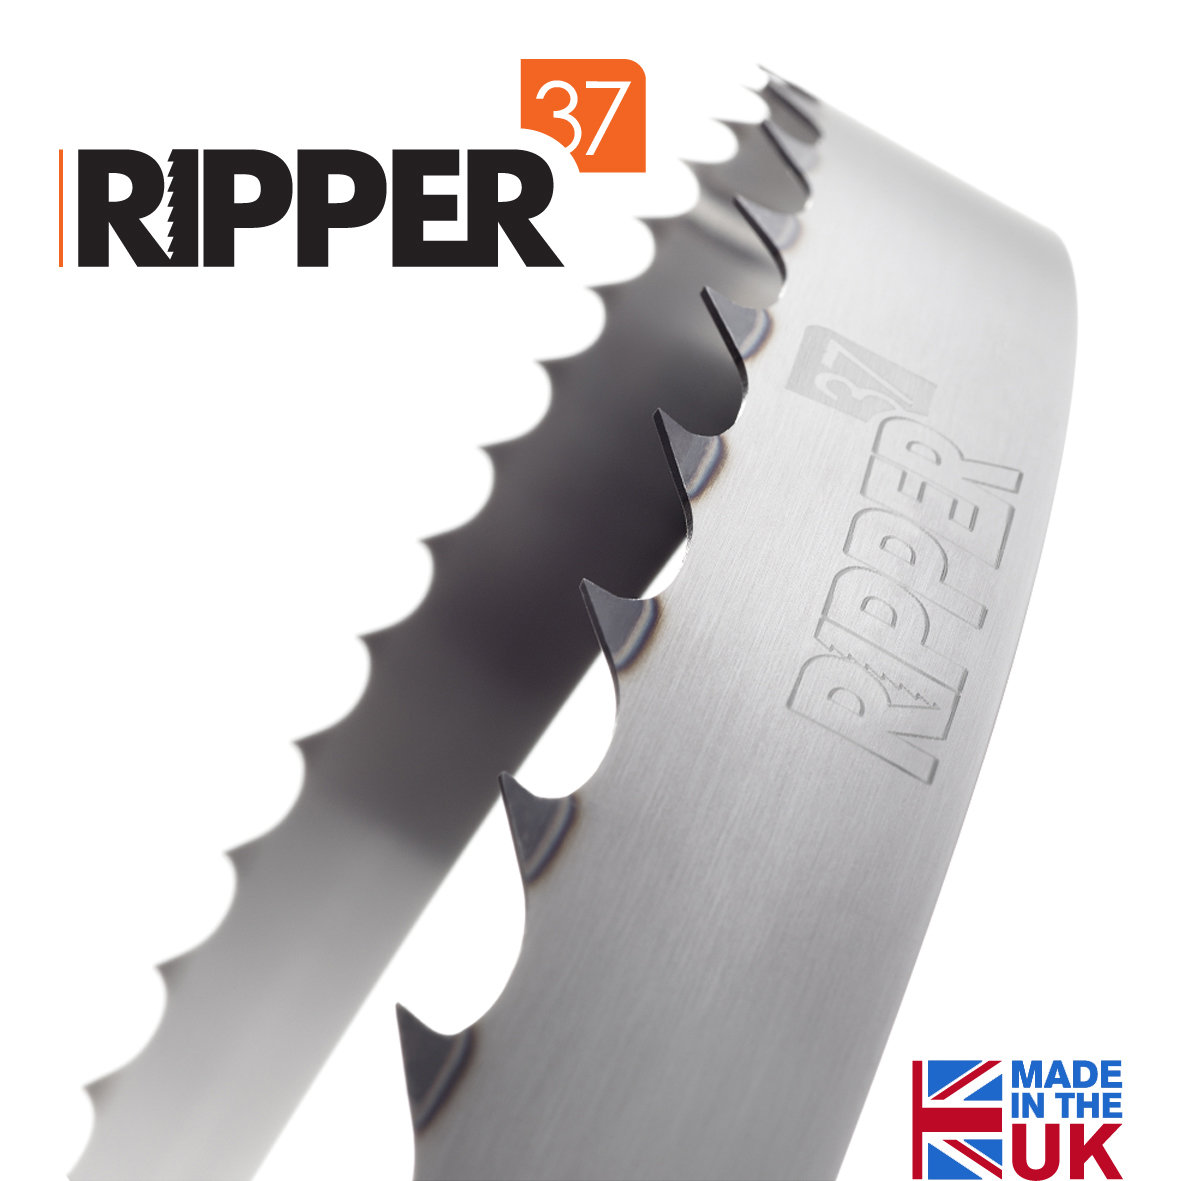 Timbery M100 Ripper37 Blades